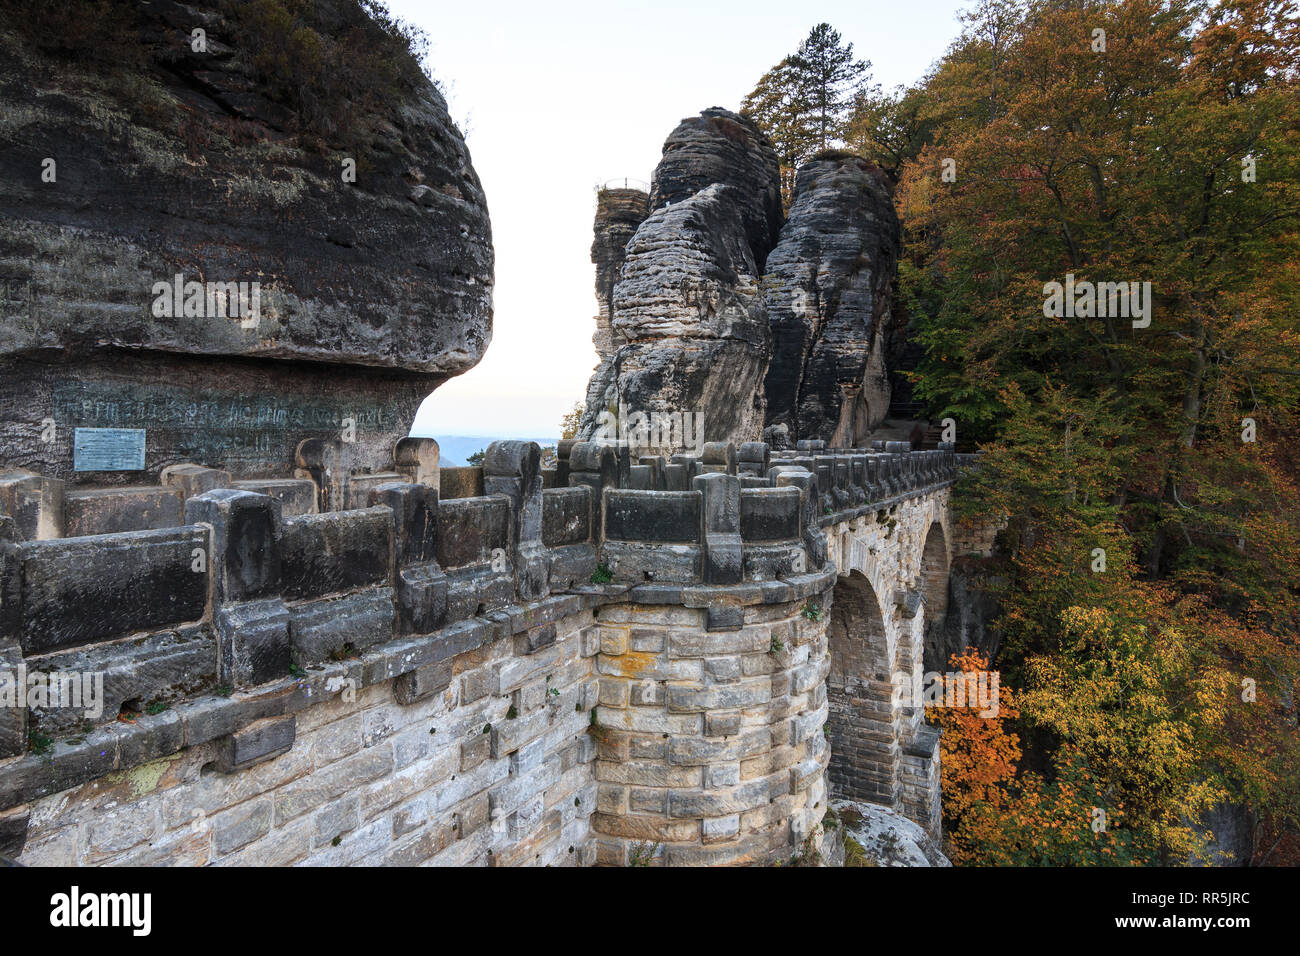 Vue de côté de la Bastei pont dans le parc national de la Suisse saxonne. Montagnes de grès de l'Elbe. Des formations rocheuses et arbres en automne. maçonnerie visible Banque D'Images